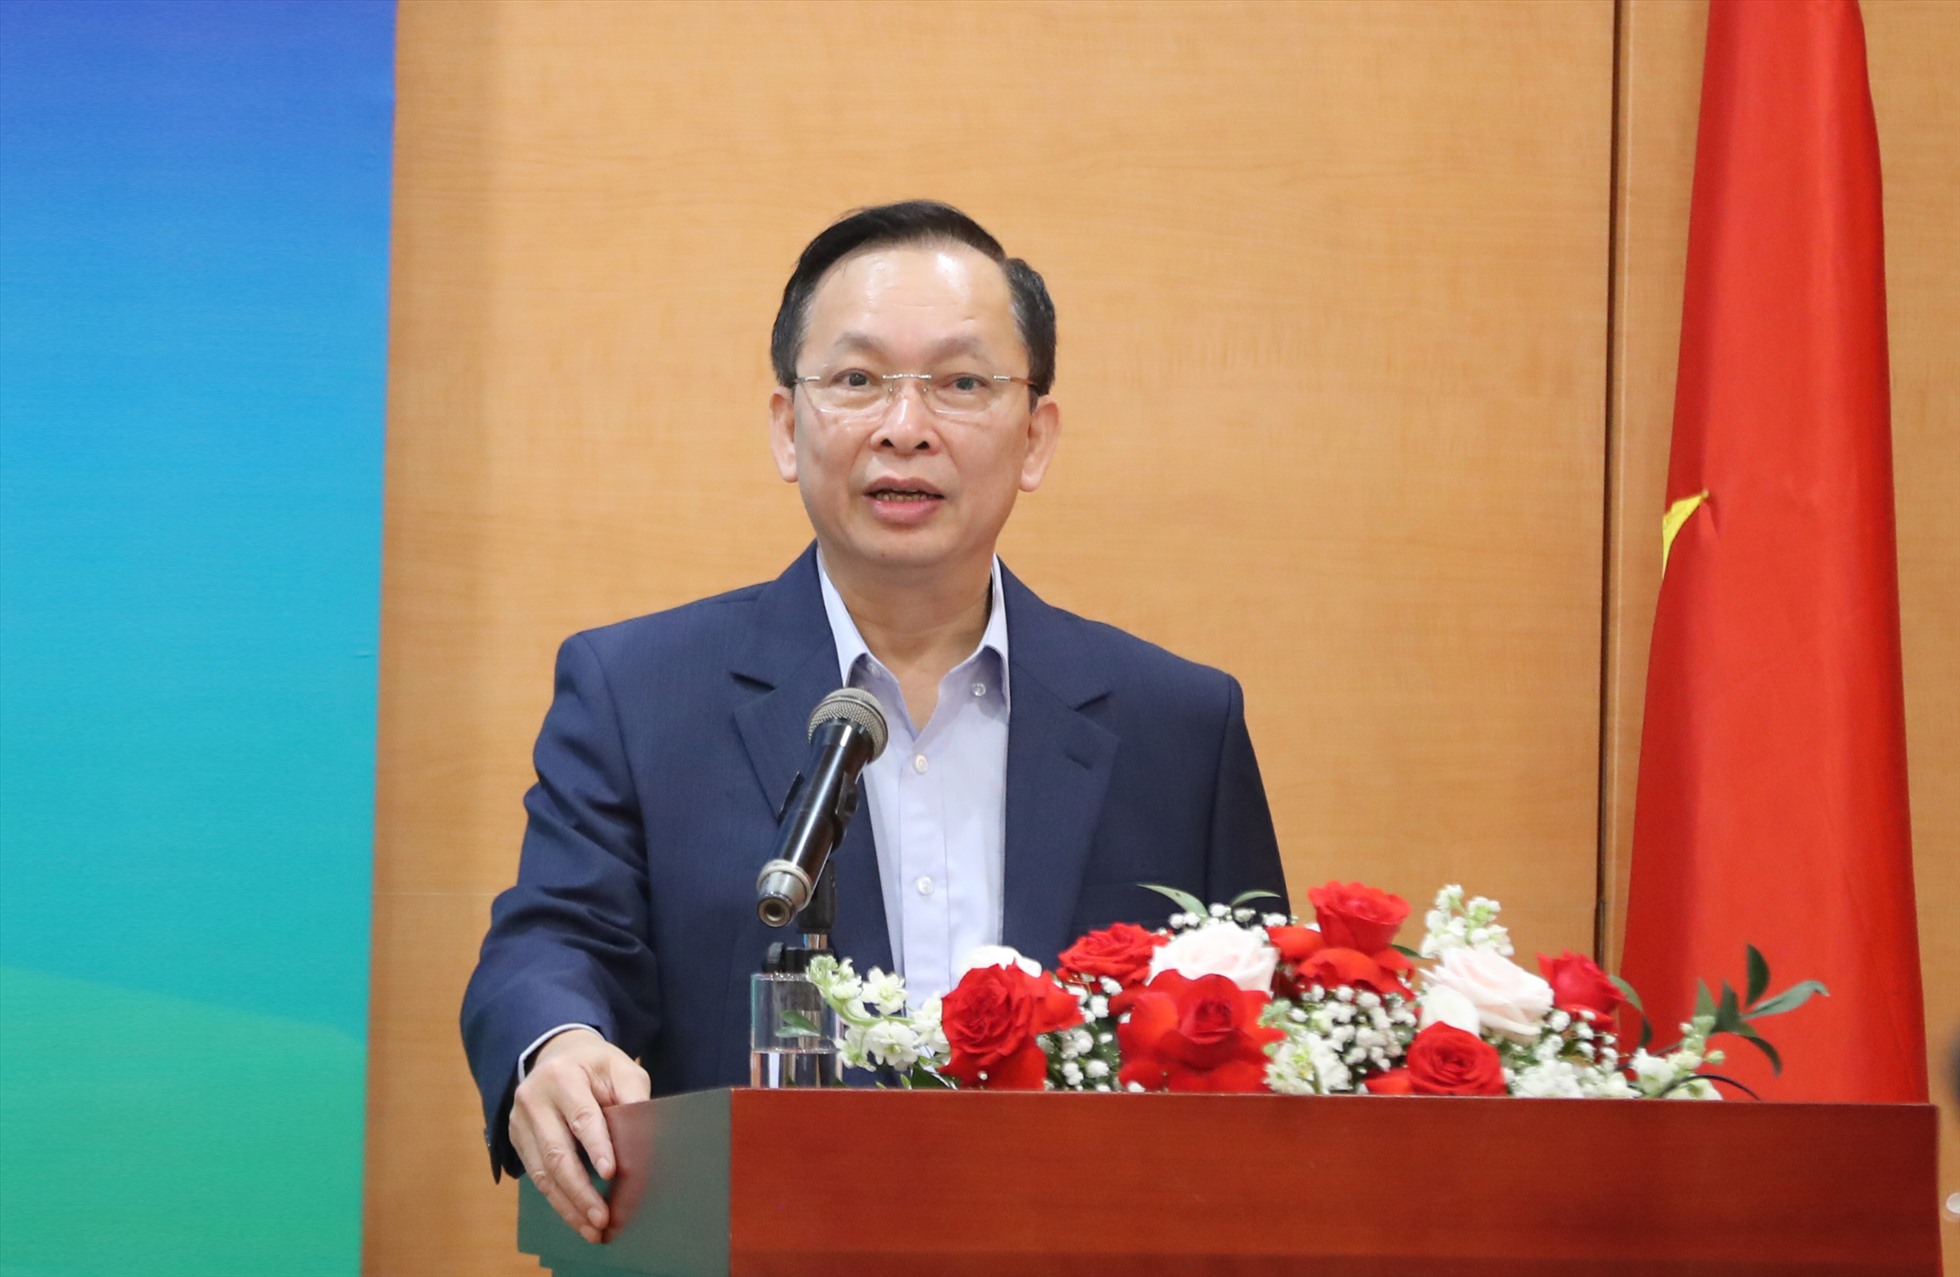 Ông Đào Minh Tú - Phó Thống đốc Thường trực Ngân hàng Nhà nước. Ảnh: SBV